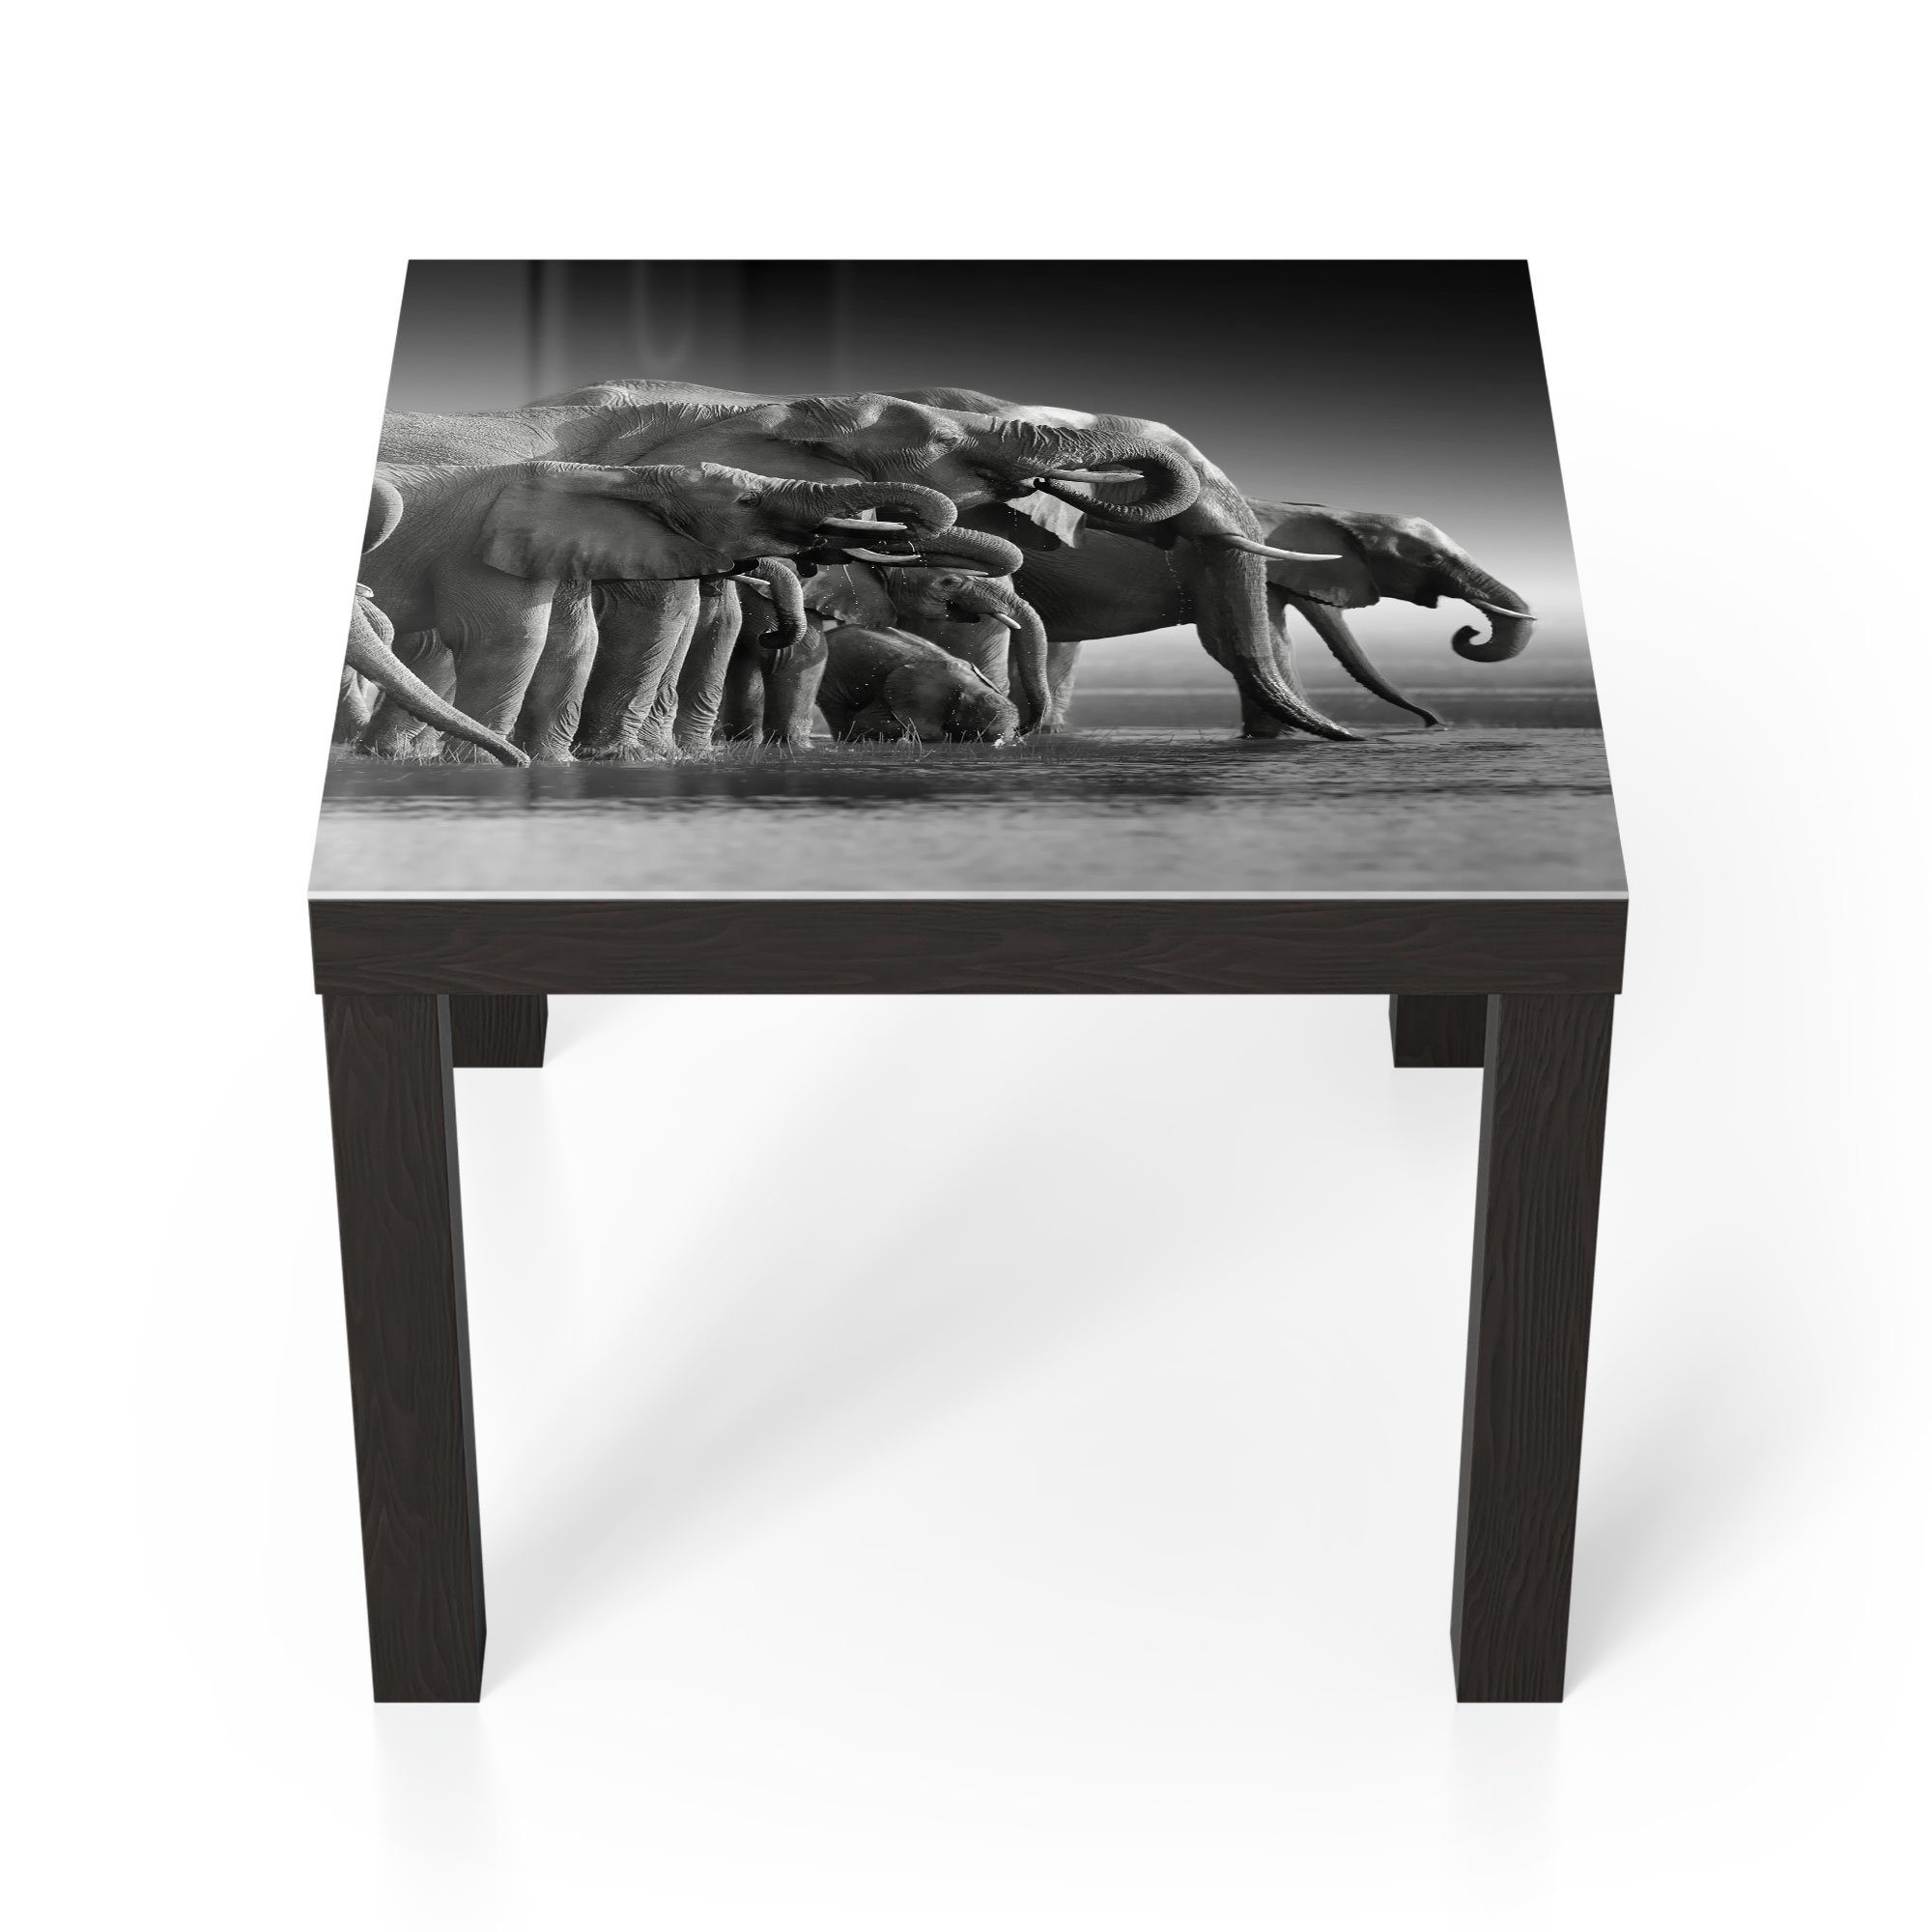 DEQORI Couchtisch 'Elefantenherde am Wasser', Glas Beistelltisch Glastisch modern Schwarz